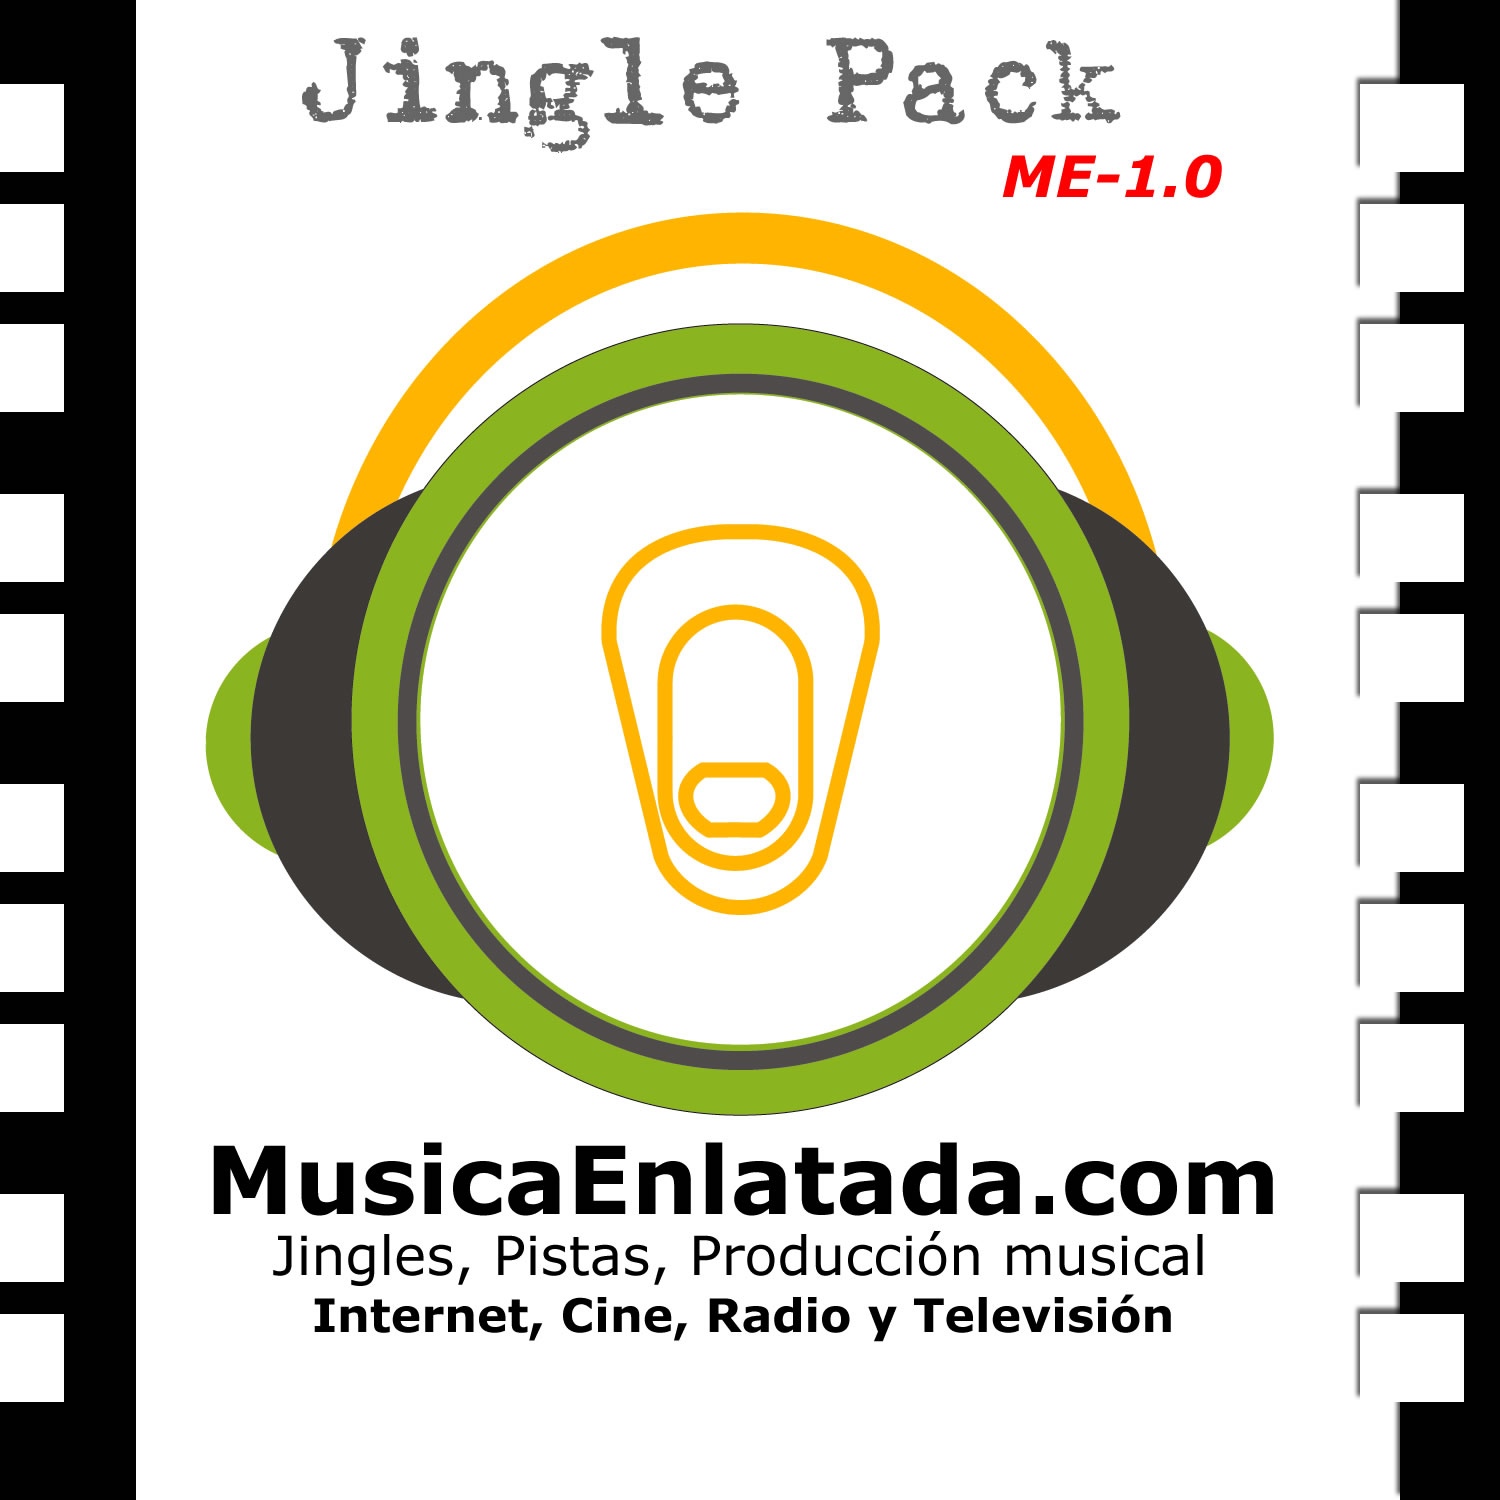 Jingle Pack ME-1.0